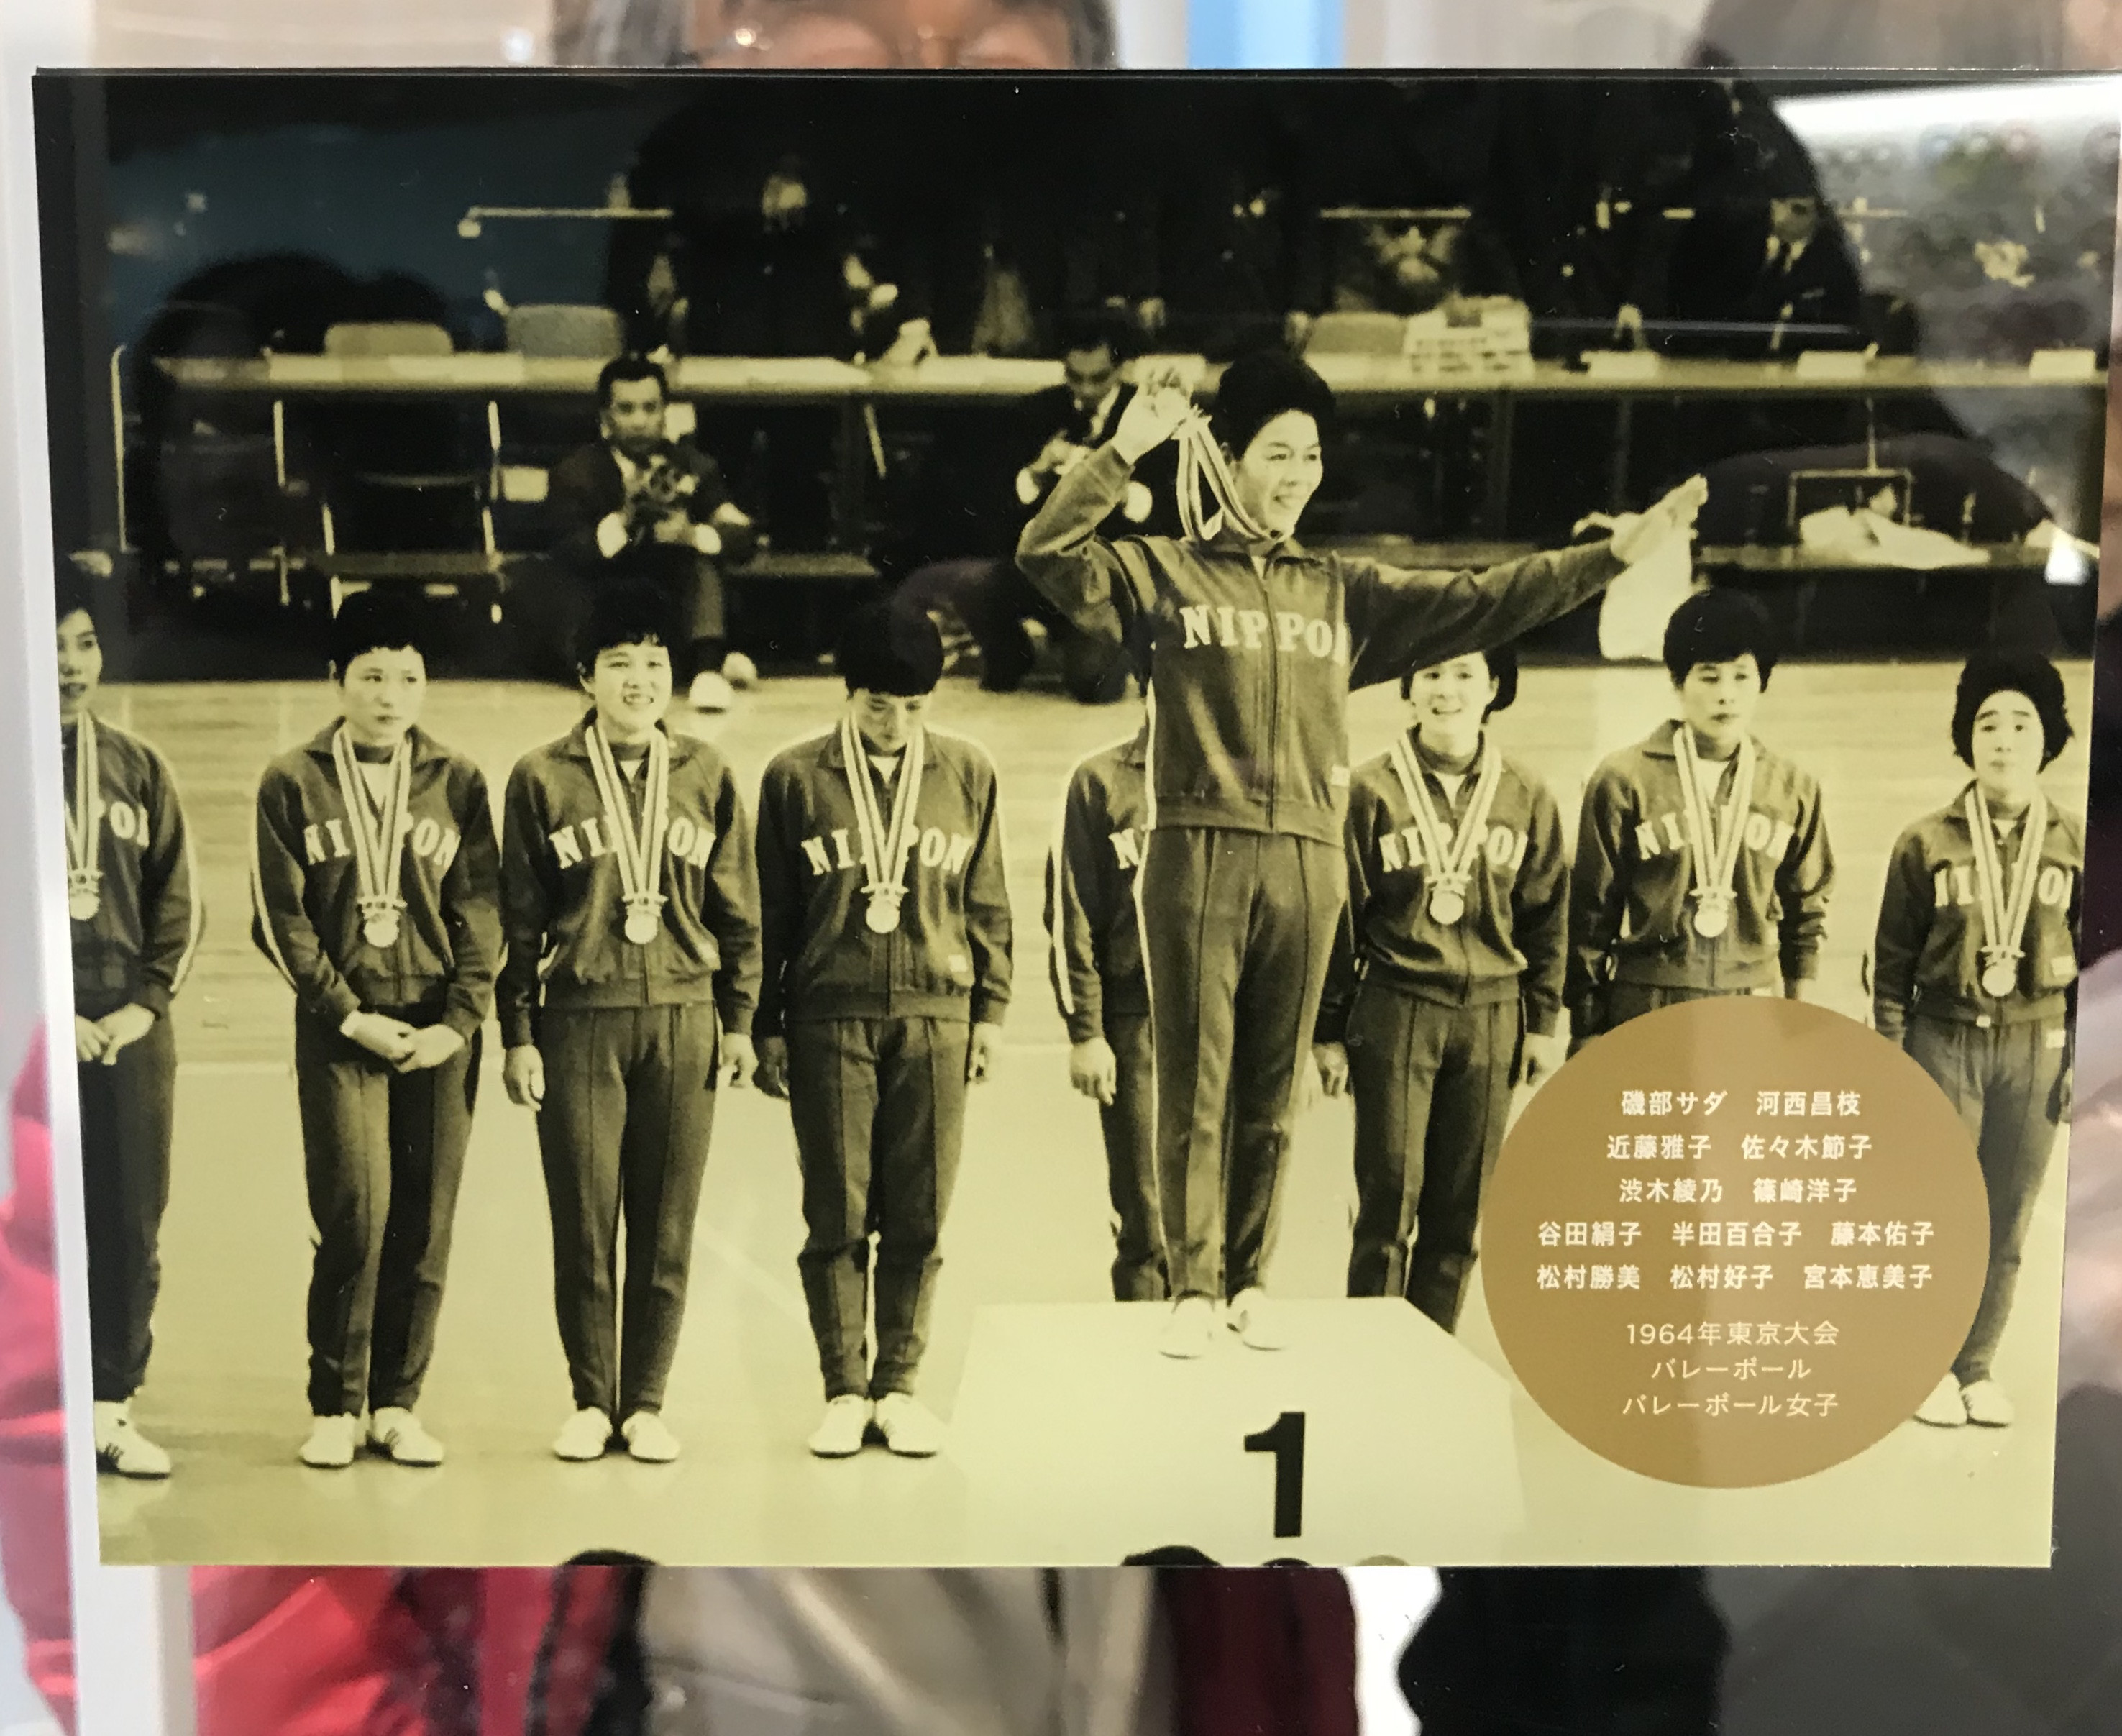 ▲▼書籍《東京奧運634》。（圖／時報出版提供，請勿隨意翻拍，以免侵權。）